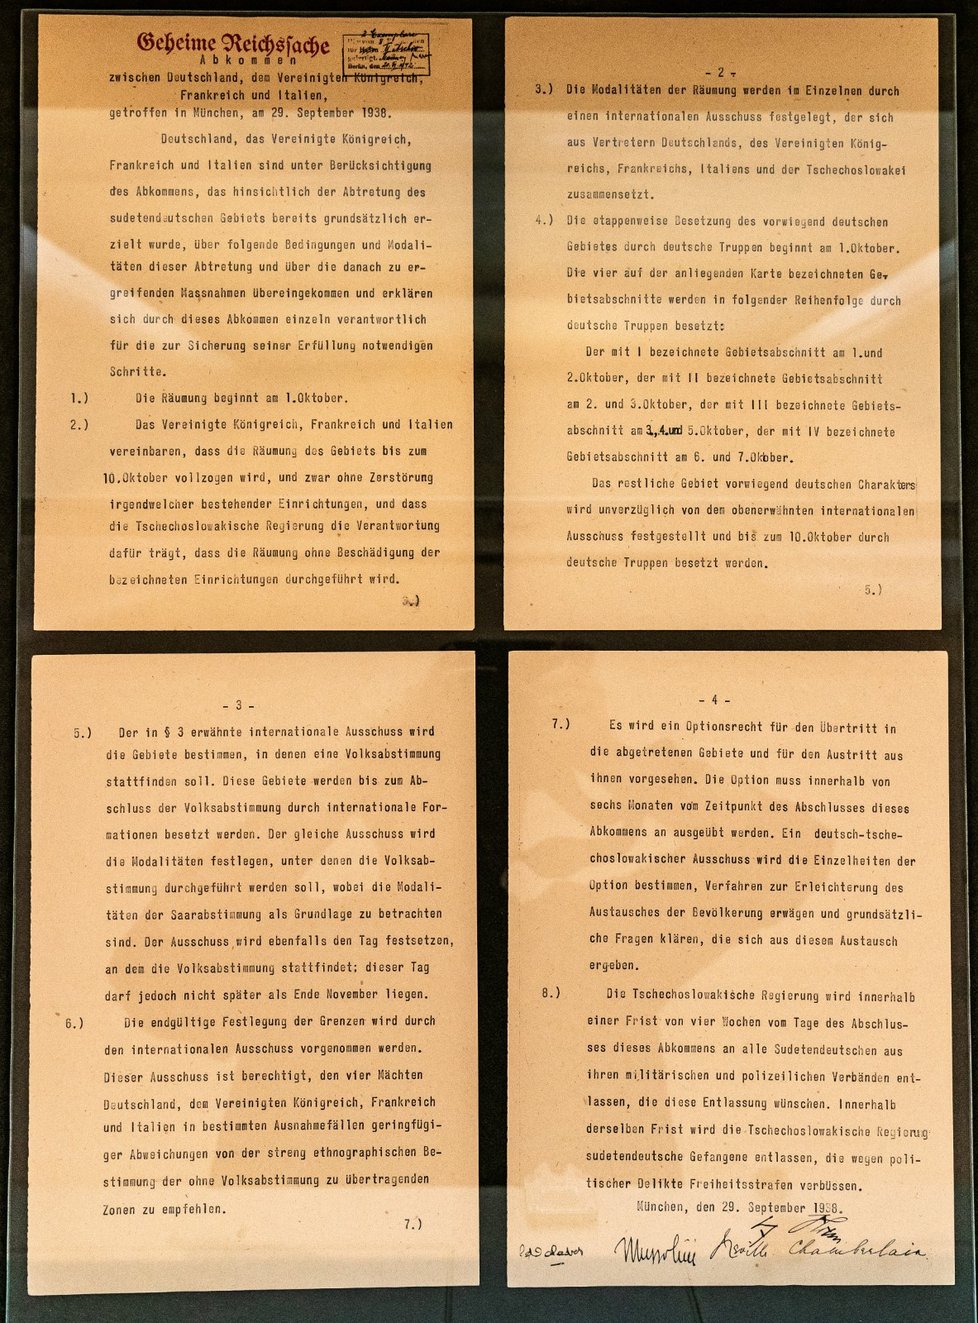 Německá verze mnichovské dohody má 4 strany, v ostatních jazycích jen tři. Je to kvůli většímu písmu, Hitler viděl špatně nablízko.